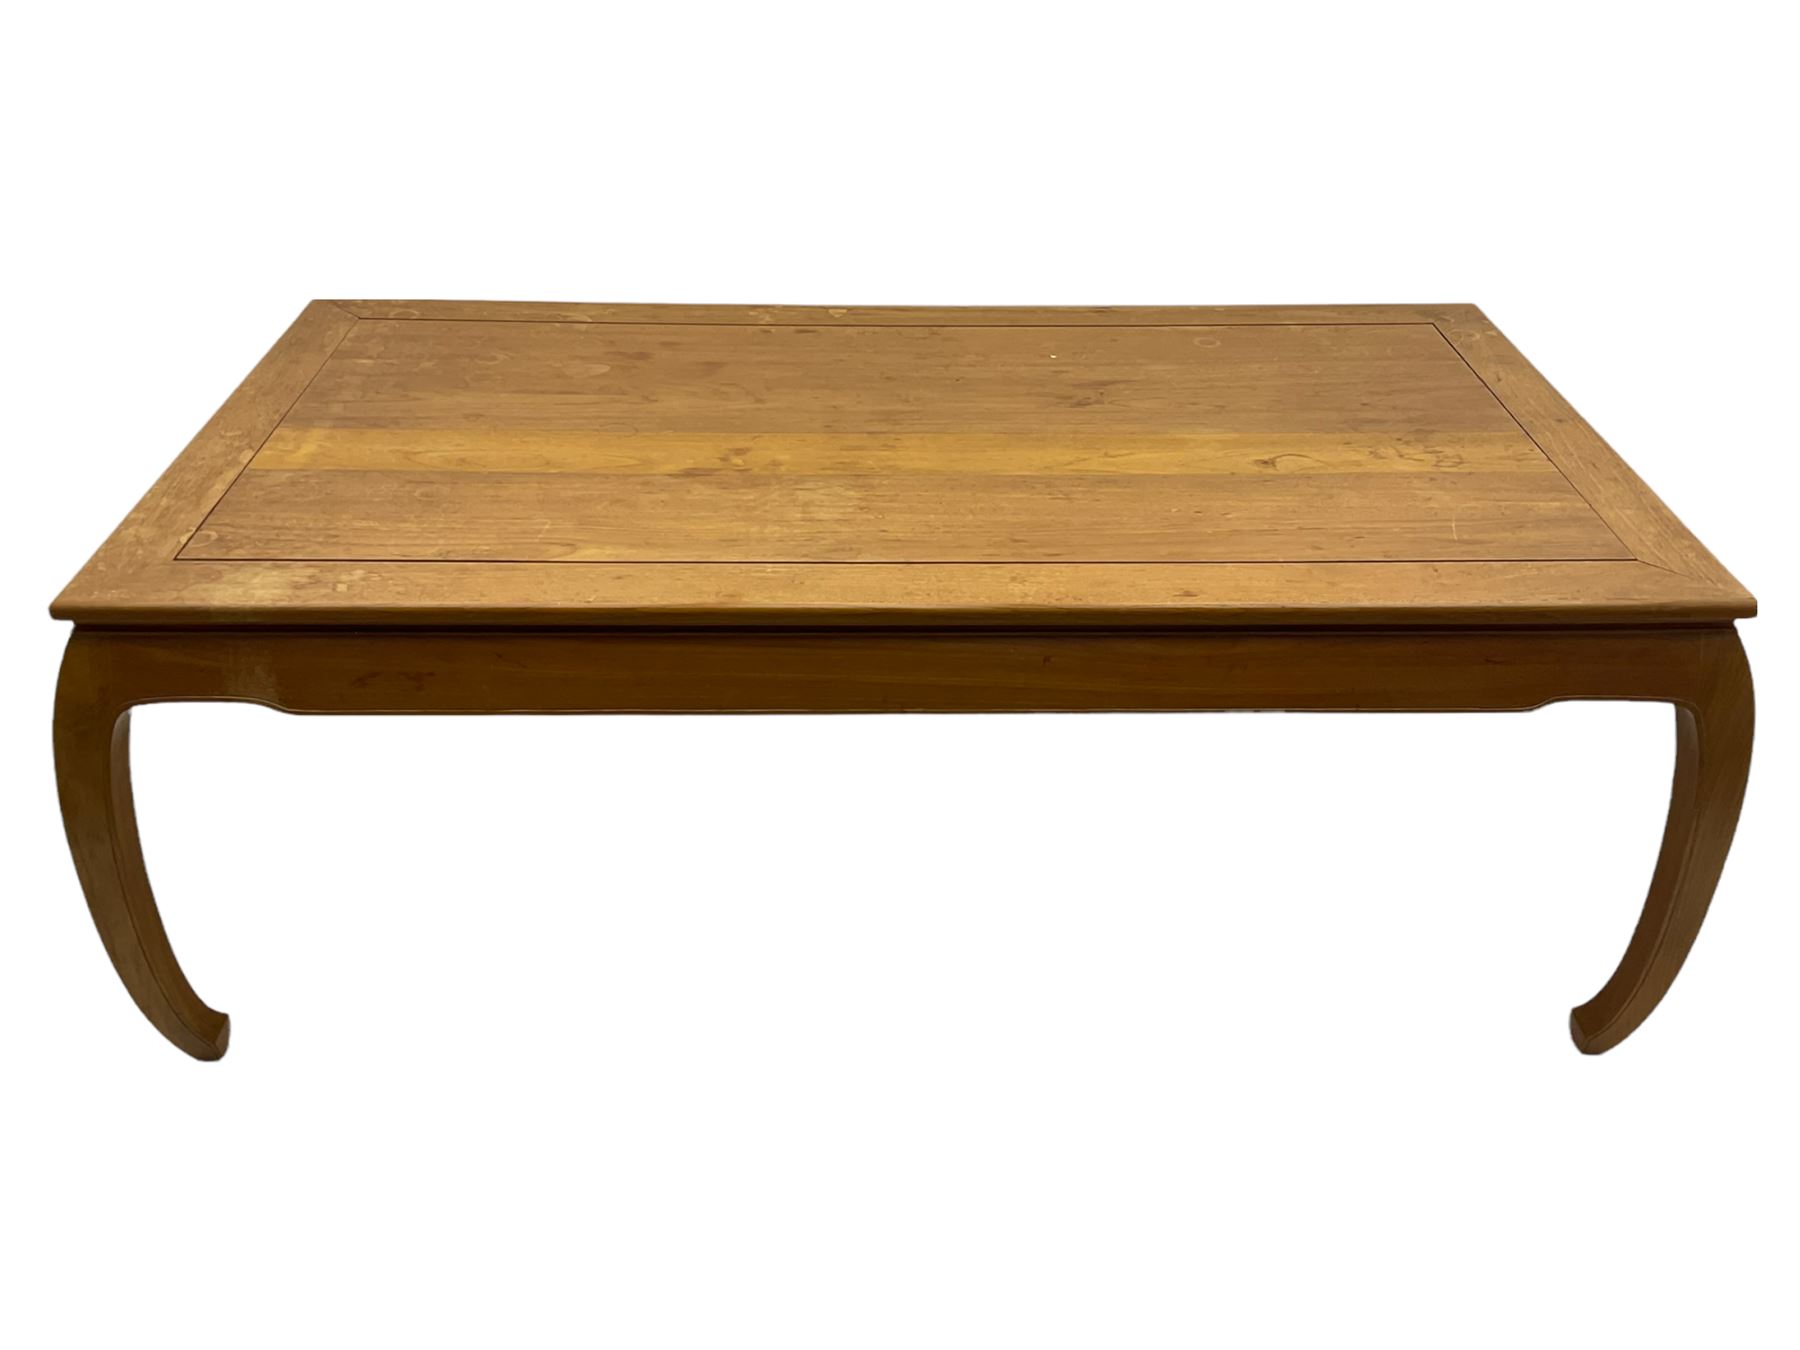 Oriental hardwood rectangular dining table - Image 6 of 22